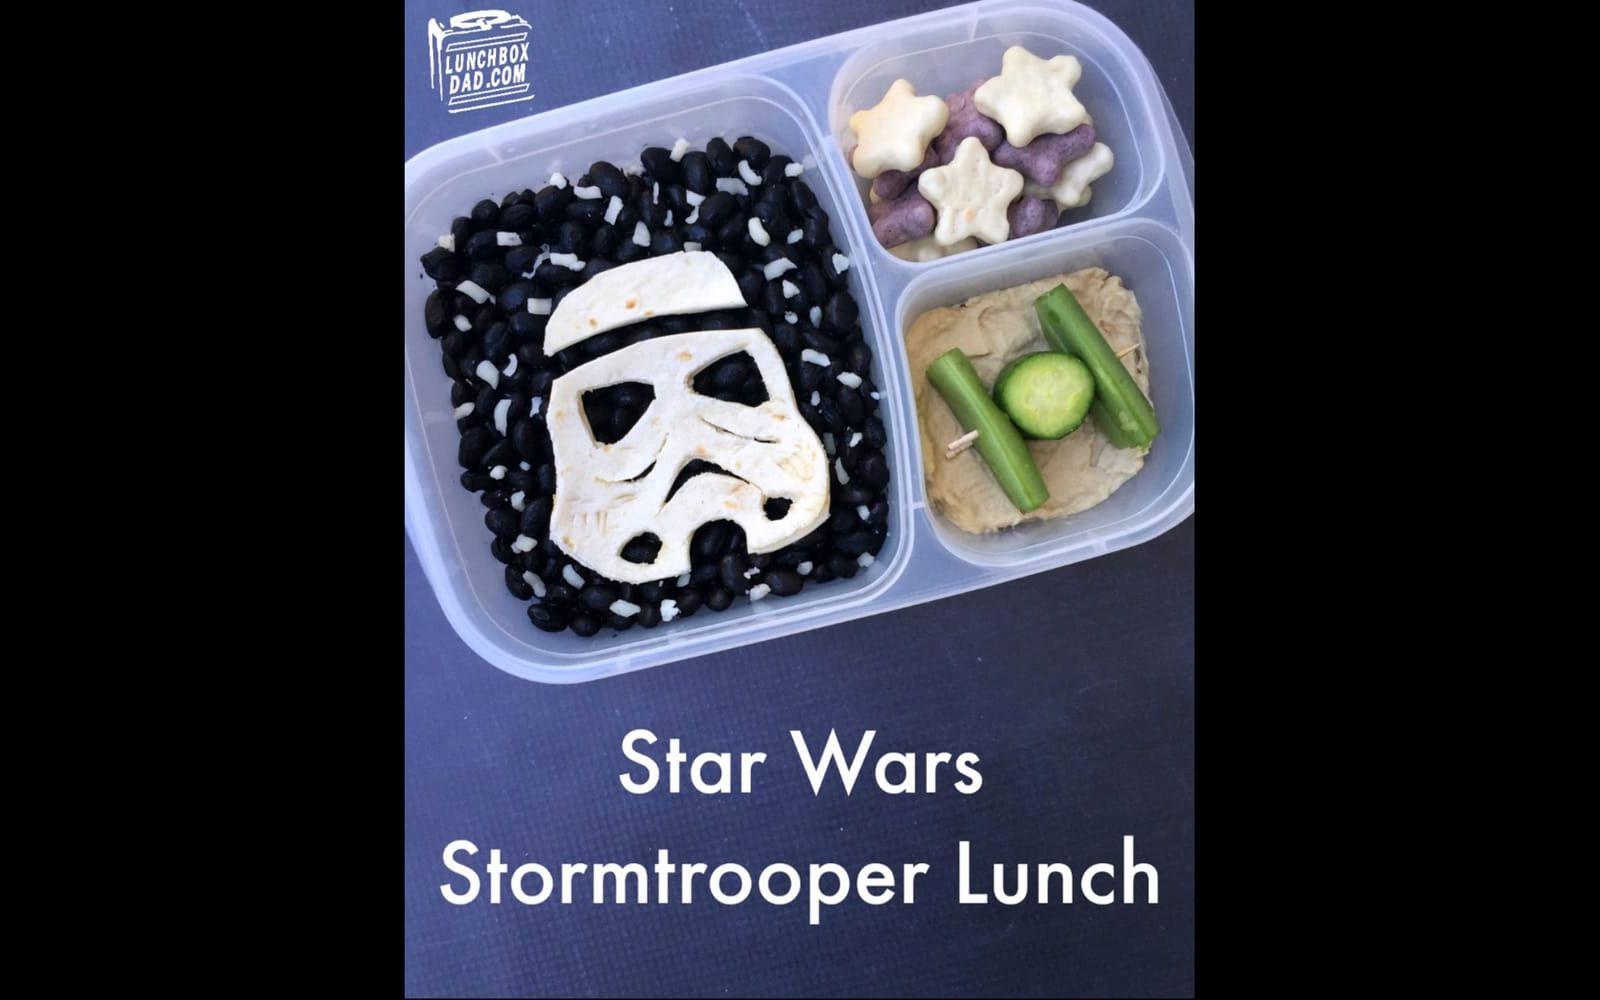 Star Wars-dagen är ett utmärkt tillfälle att leka med maten. Hämta inspiration från <a href="http://www.lunchboxdad.com/search/label/star%20wars" target="_blank">Lunchboxdad</a> och hans smått fantastiska sätt att presentera maten.
